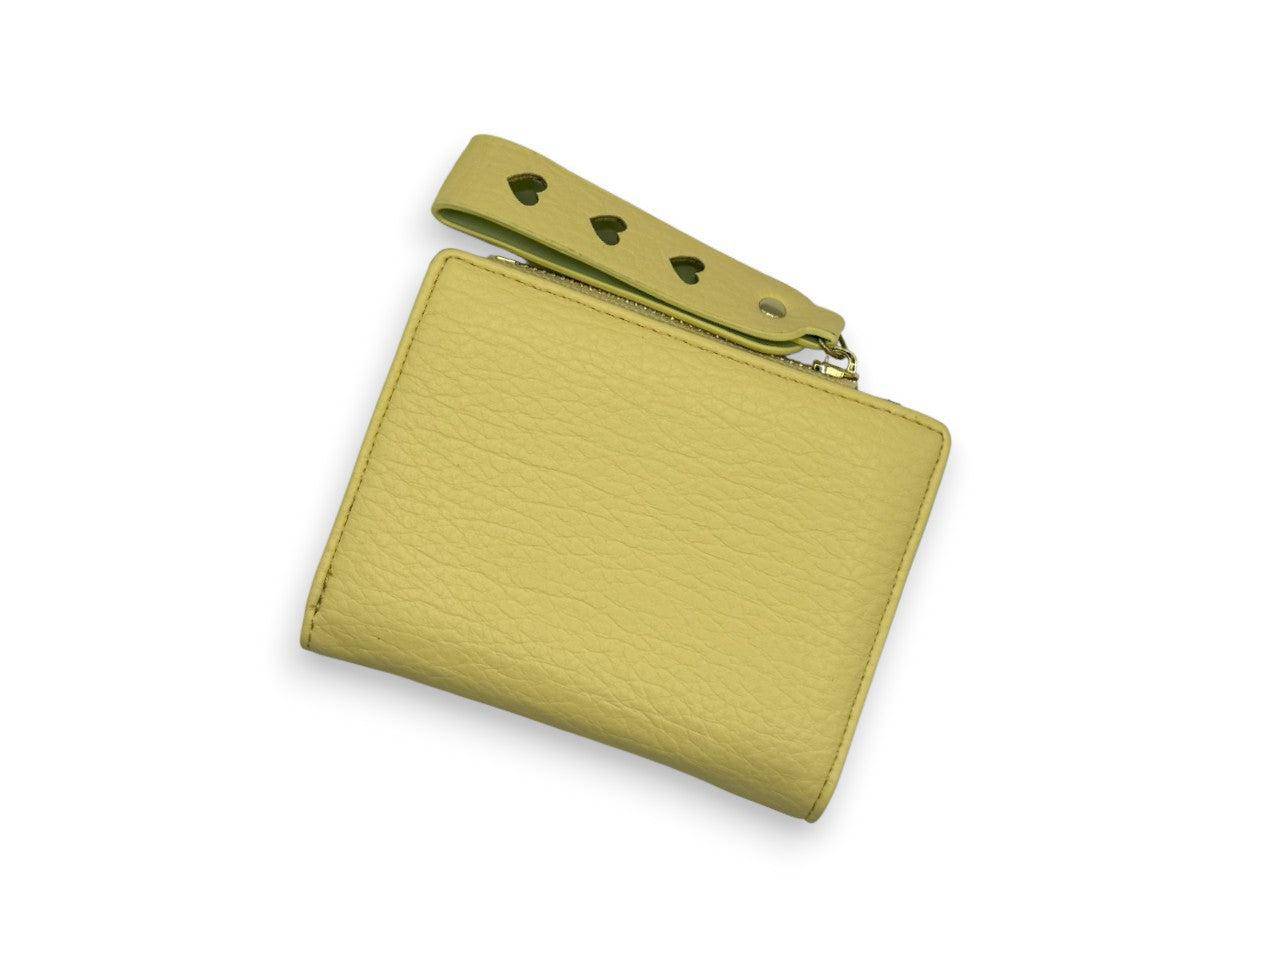 محفظة يد نسائية مستطيلة الشكل باللون الاصفر بتصميم بسيط ومميز - KSA